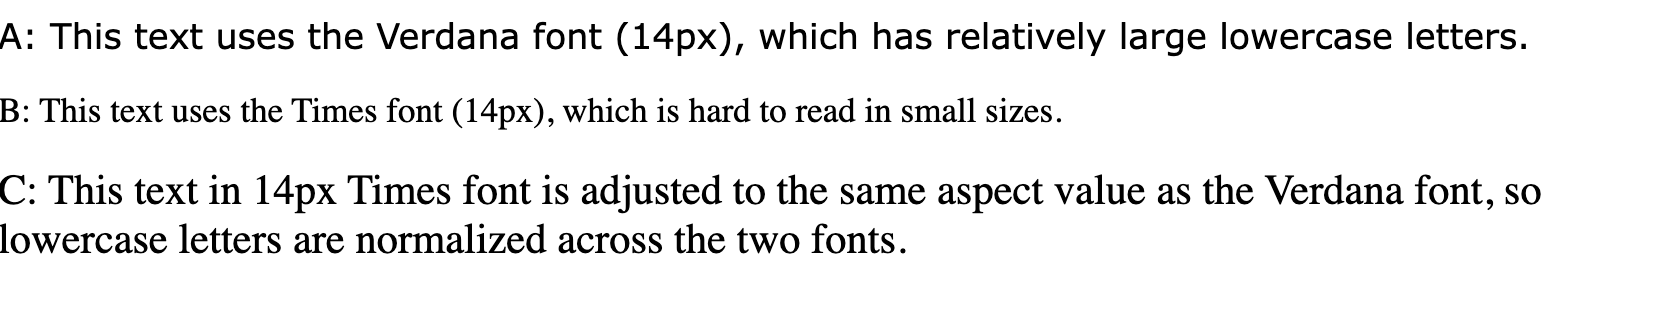 「このテキストは verdana フォント（14px）を使用し、小文字が比較的大きくなっています」、「これは Times フォント（14px）を使用しているため、小さいサイズでは読みにくい」というテキスト行「This text in 14px Times font in the text in Verdana Font, the same as the same value value to the 小文字フォントが 2 つのフォントで正規化されています。